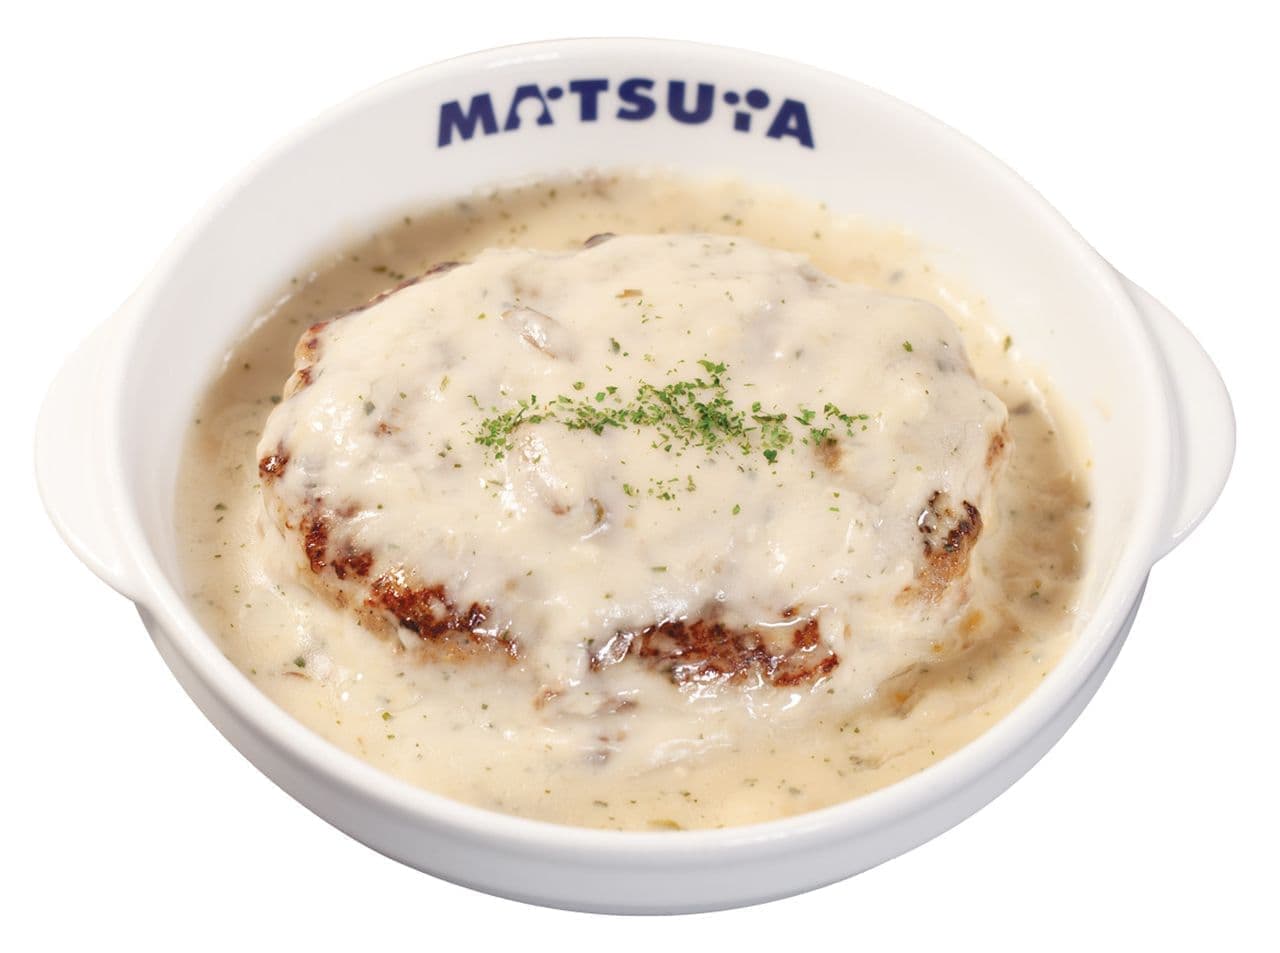 Matsuya "Hamburger steak set meal with white sauce